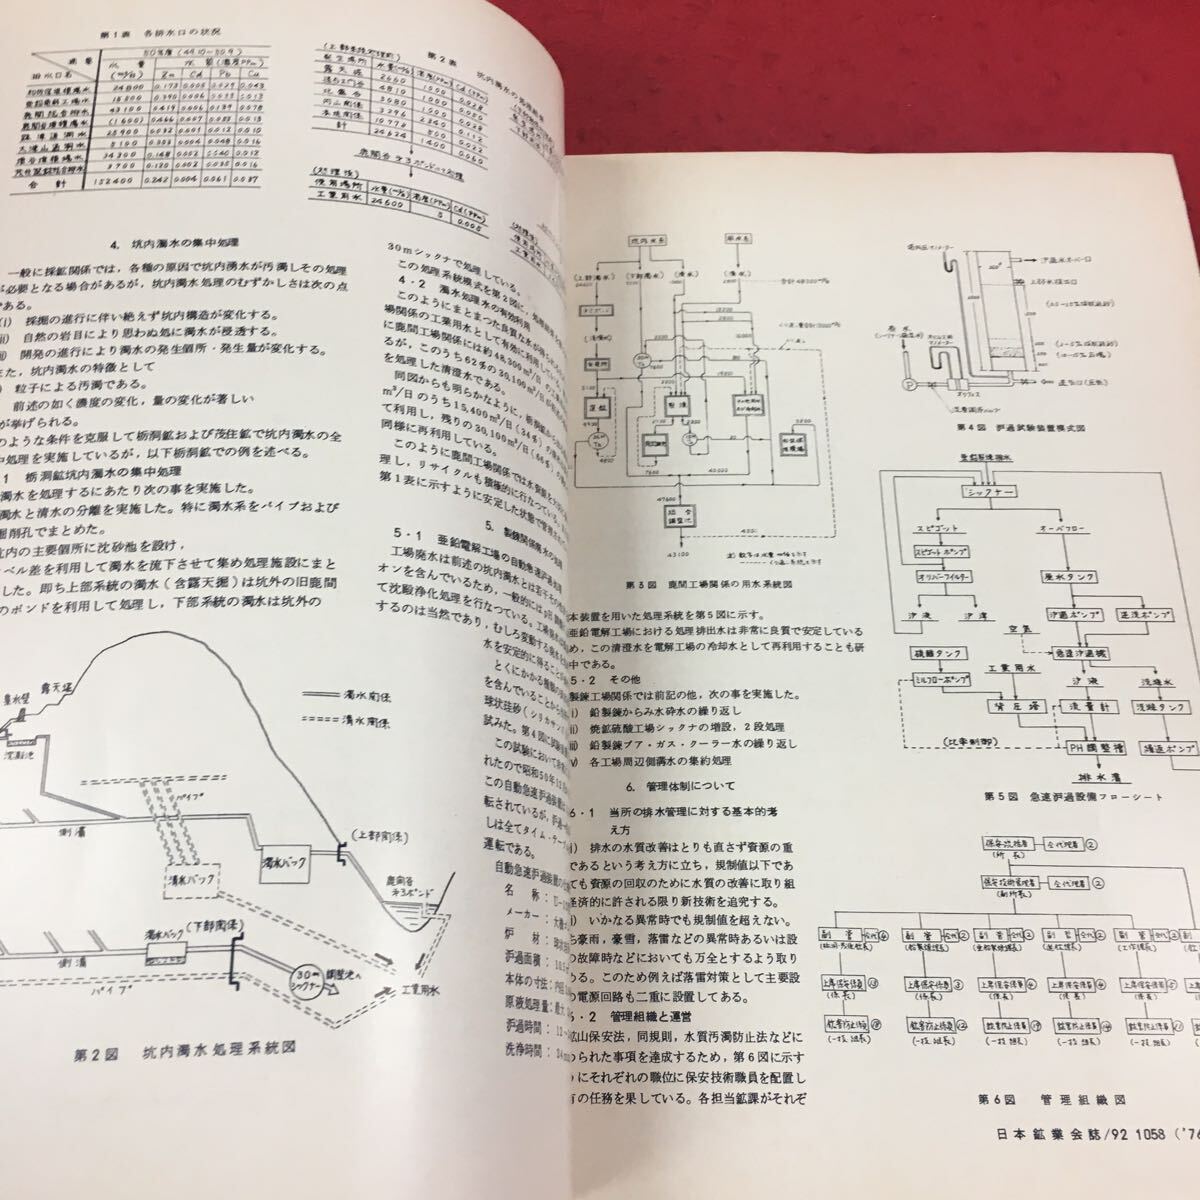 d-330*14 Япония . индустрия . журнал *76-9 vol.92 No.1063 фирма . юридическое лицо Япония . индустрия . инженерия промышленность . индустрия 